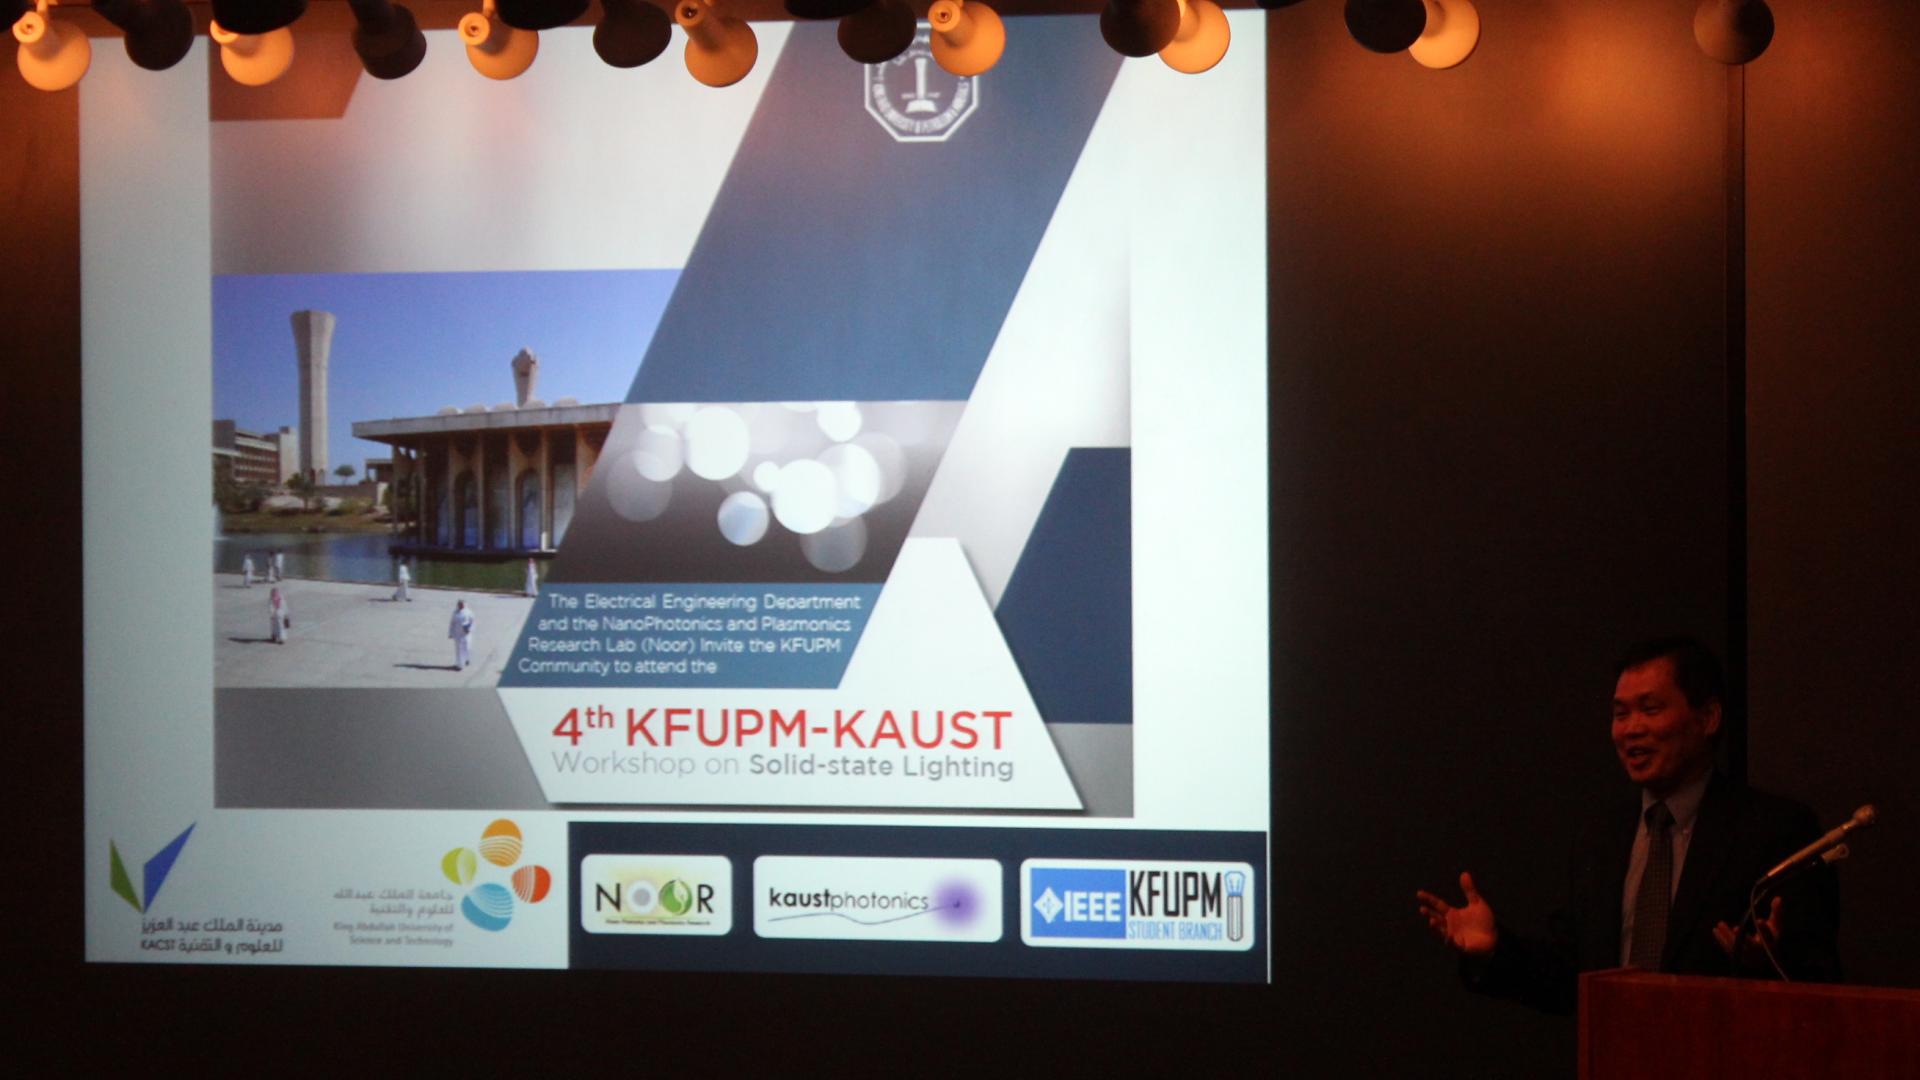 KFUPM KAUST 4th Workshop on Solid state Lighting 2015